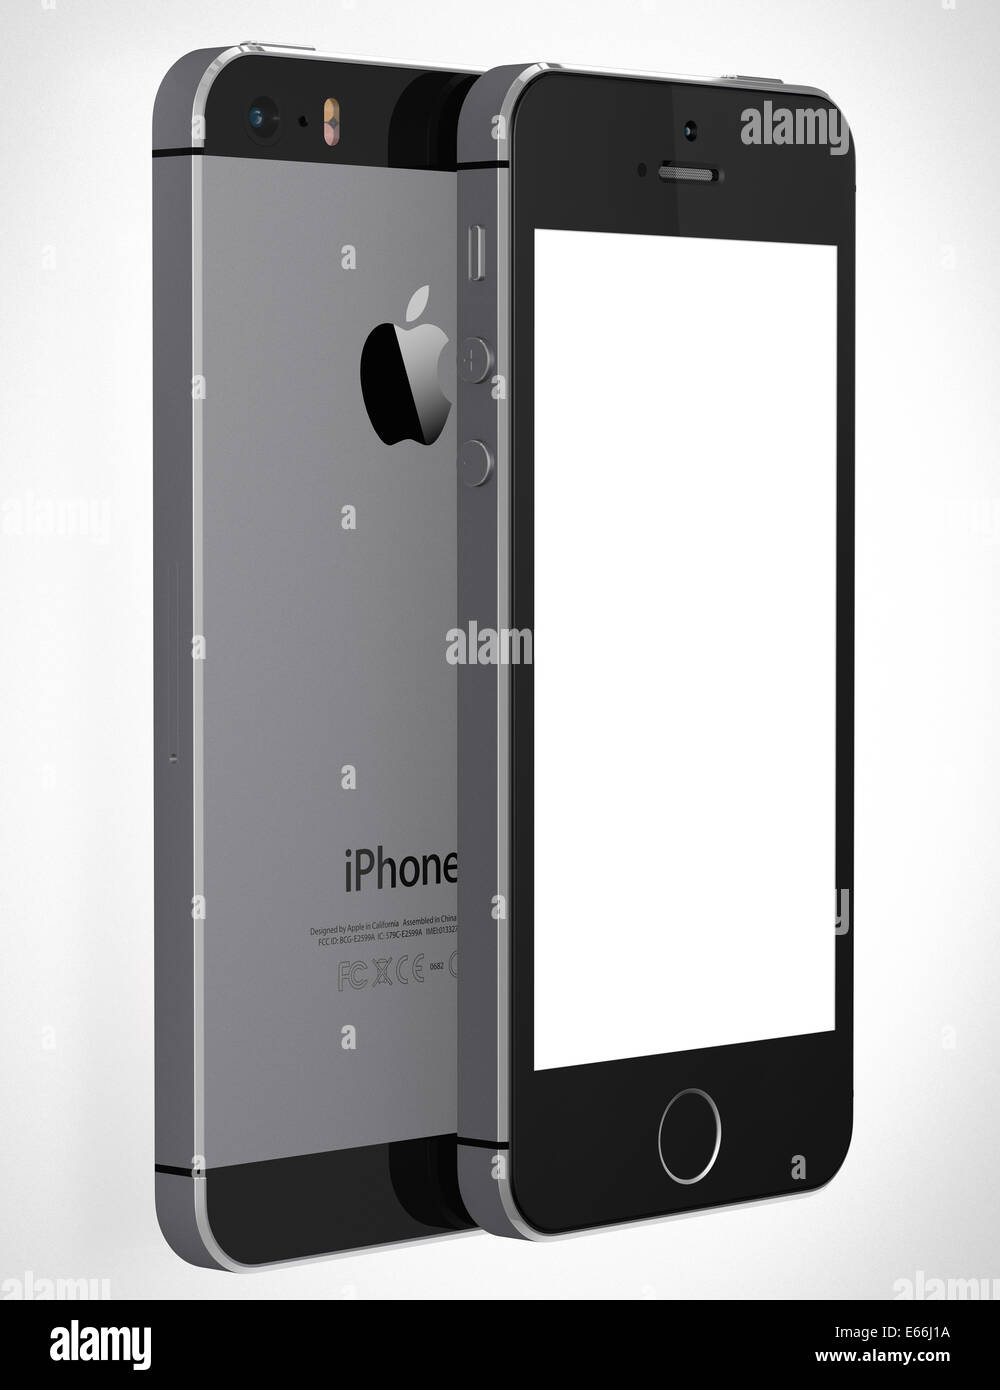 Una vista frontale di un Apple iPhone 5s la visualizzazione di una schermata bianca vuota Foto Stock